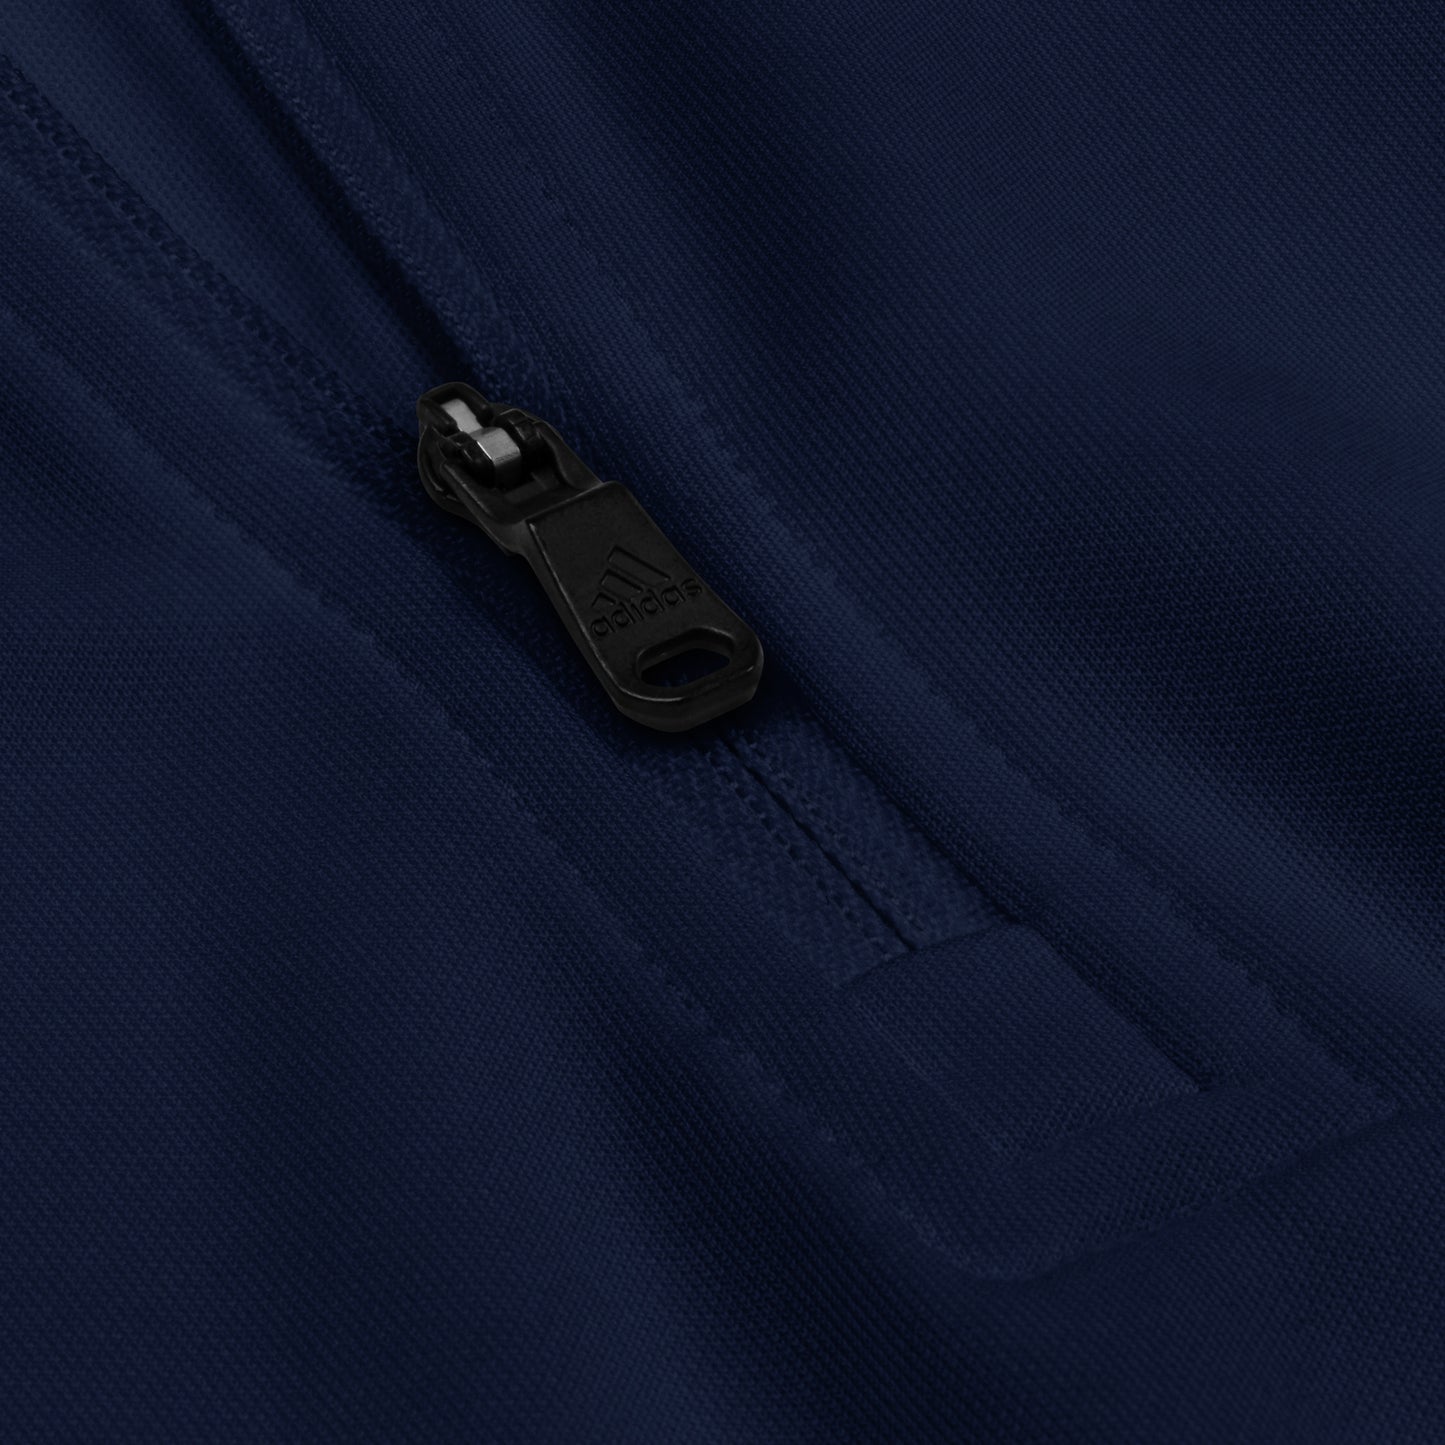 Adidas quarter zip black pullover, Embroidery, Iran/کاپشن ورزشی سیاه آدیداس مردانه نخ‌نوشت ایران